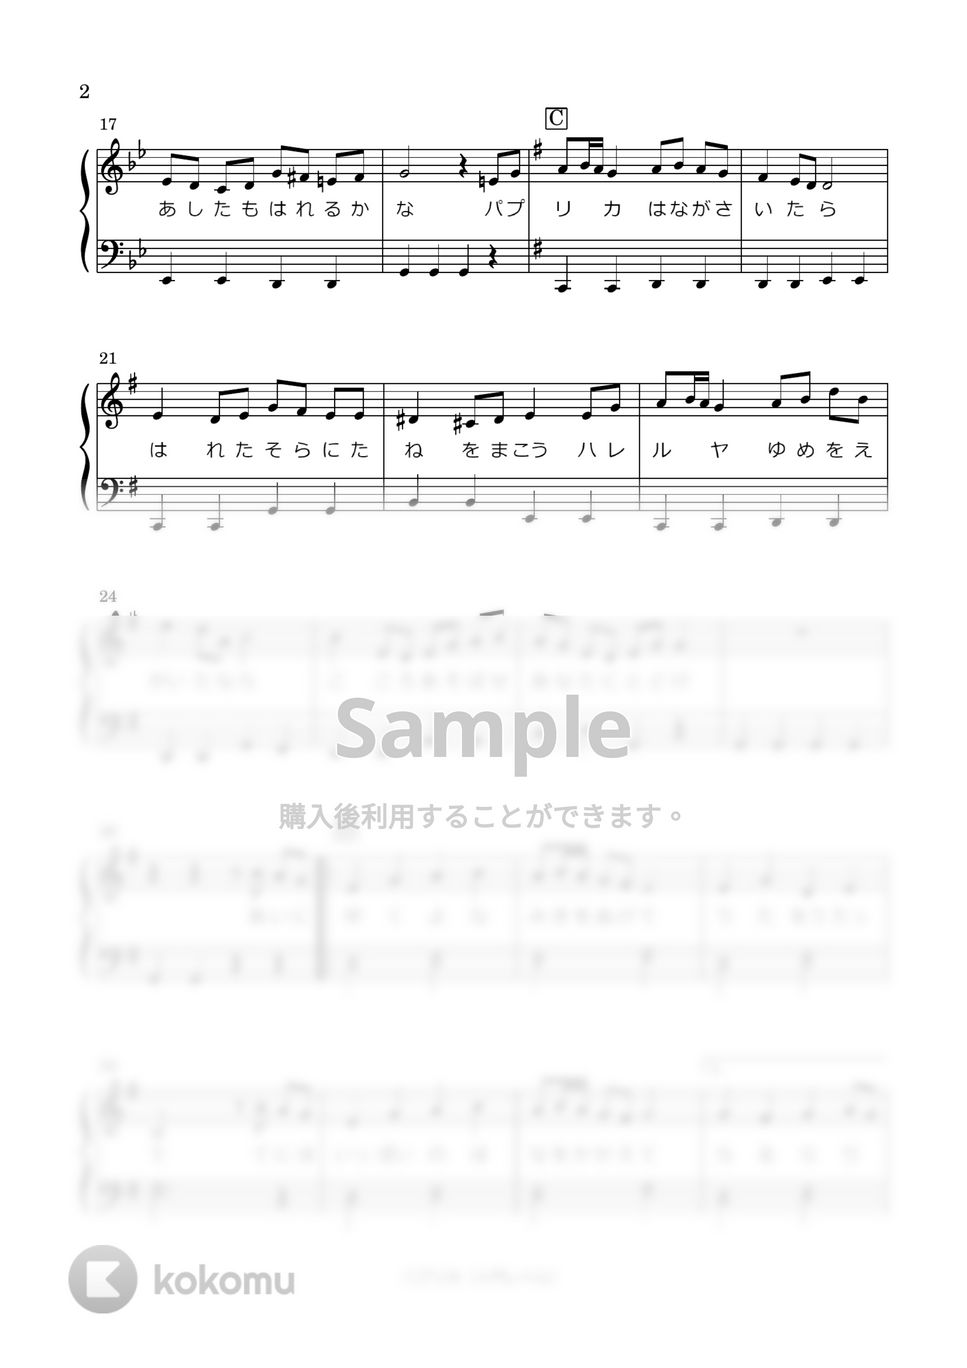 Foorin - パプリカ (かんたん調/歌詞付き) by はみんぐのかんたん楽譜